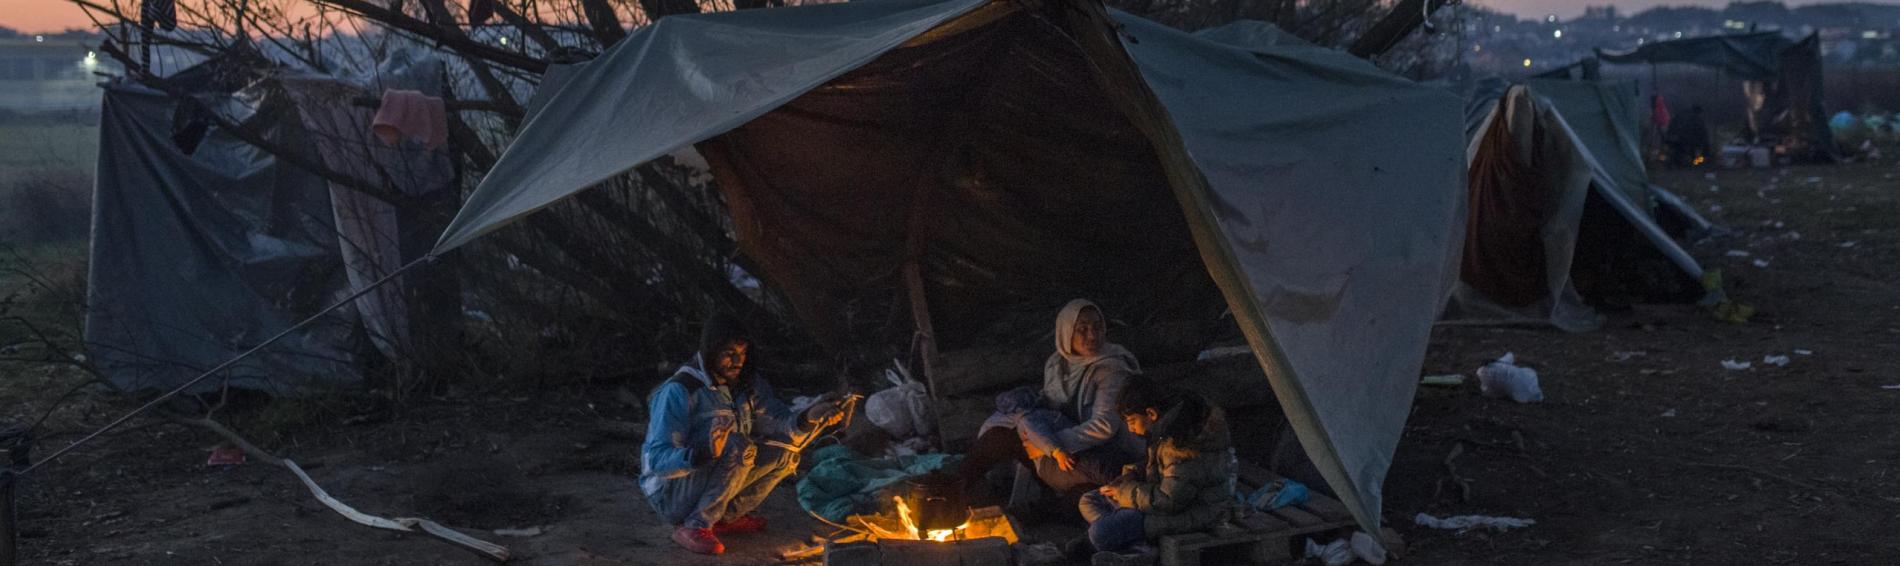 familie zit rond een vuurtje onder een zeil in de koude bij zonsopgang